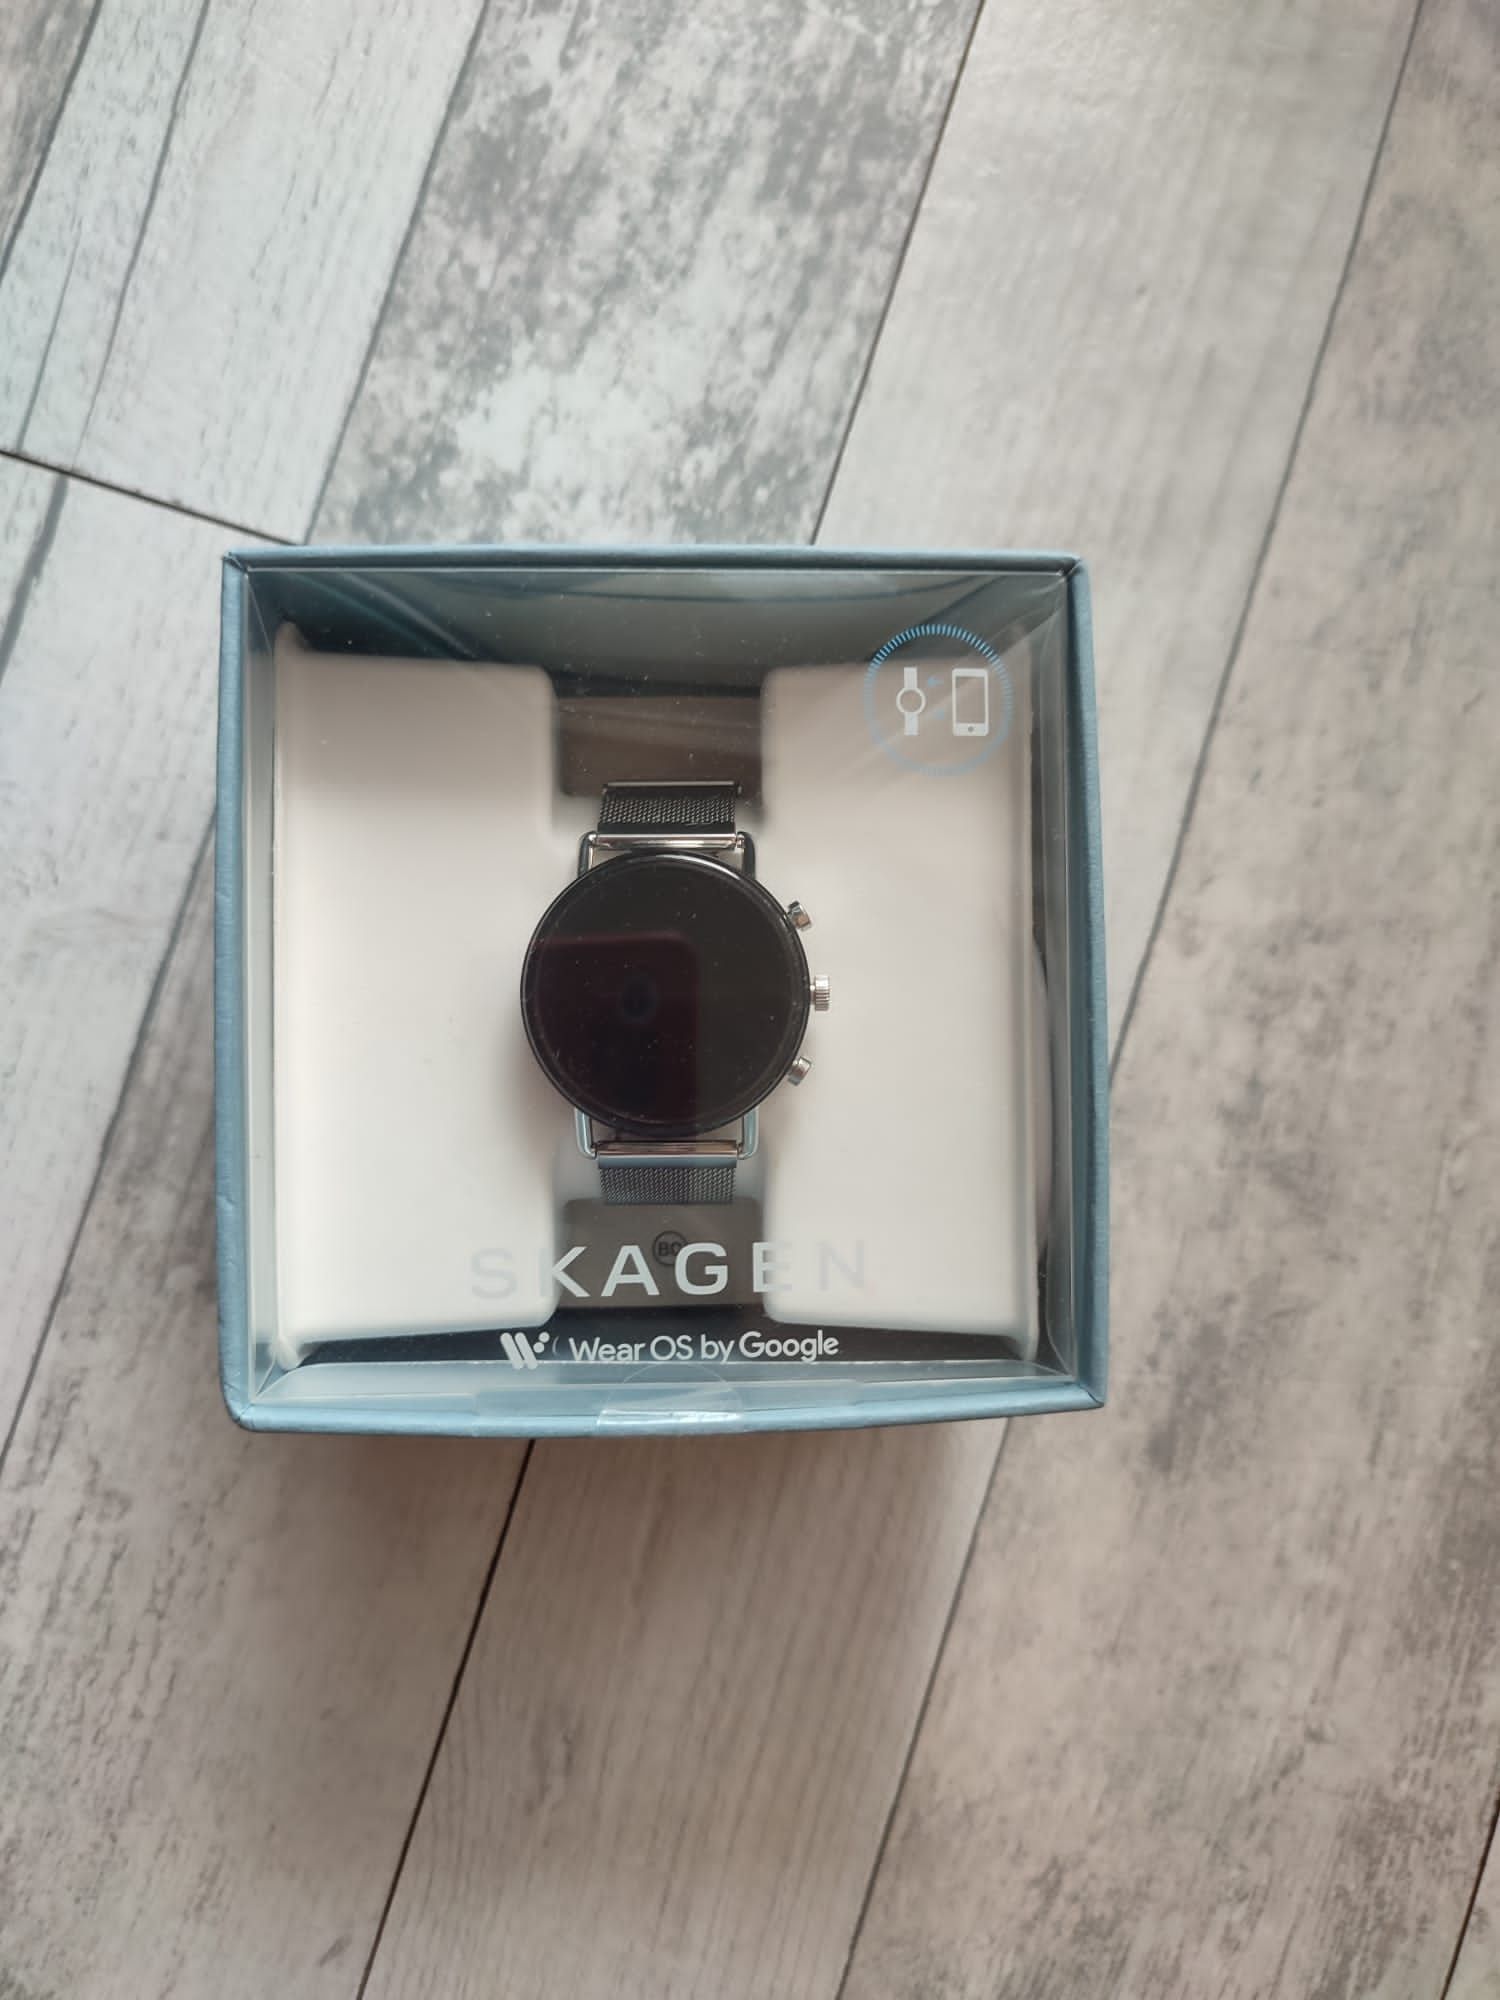 Azi 450 Super Smartchwatch SKAGEN elegant conditie EXCELENTA.